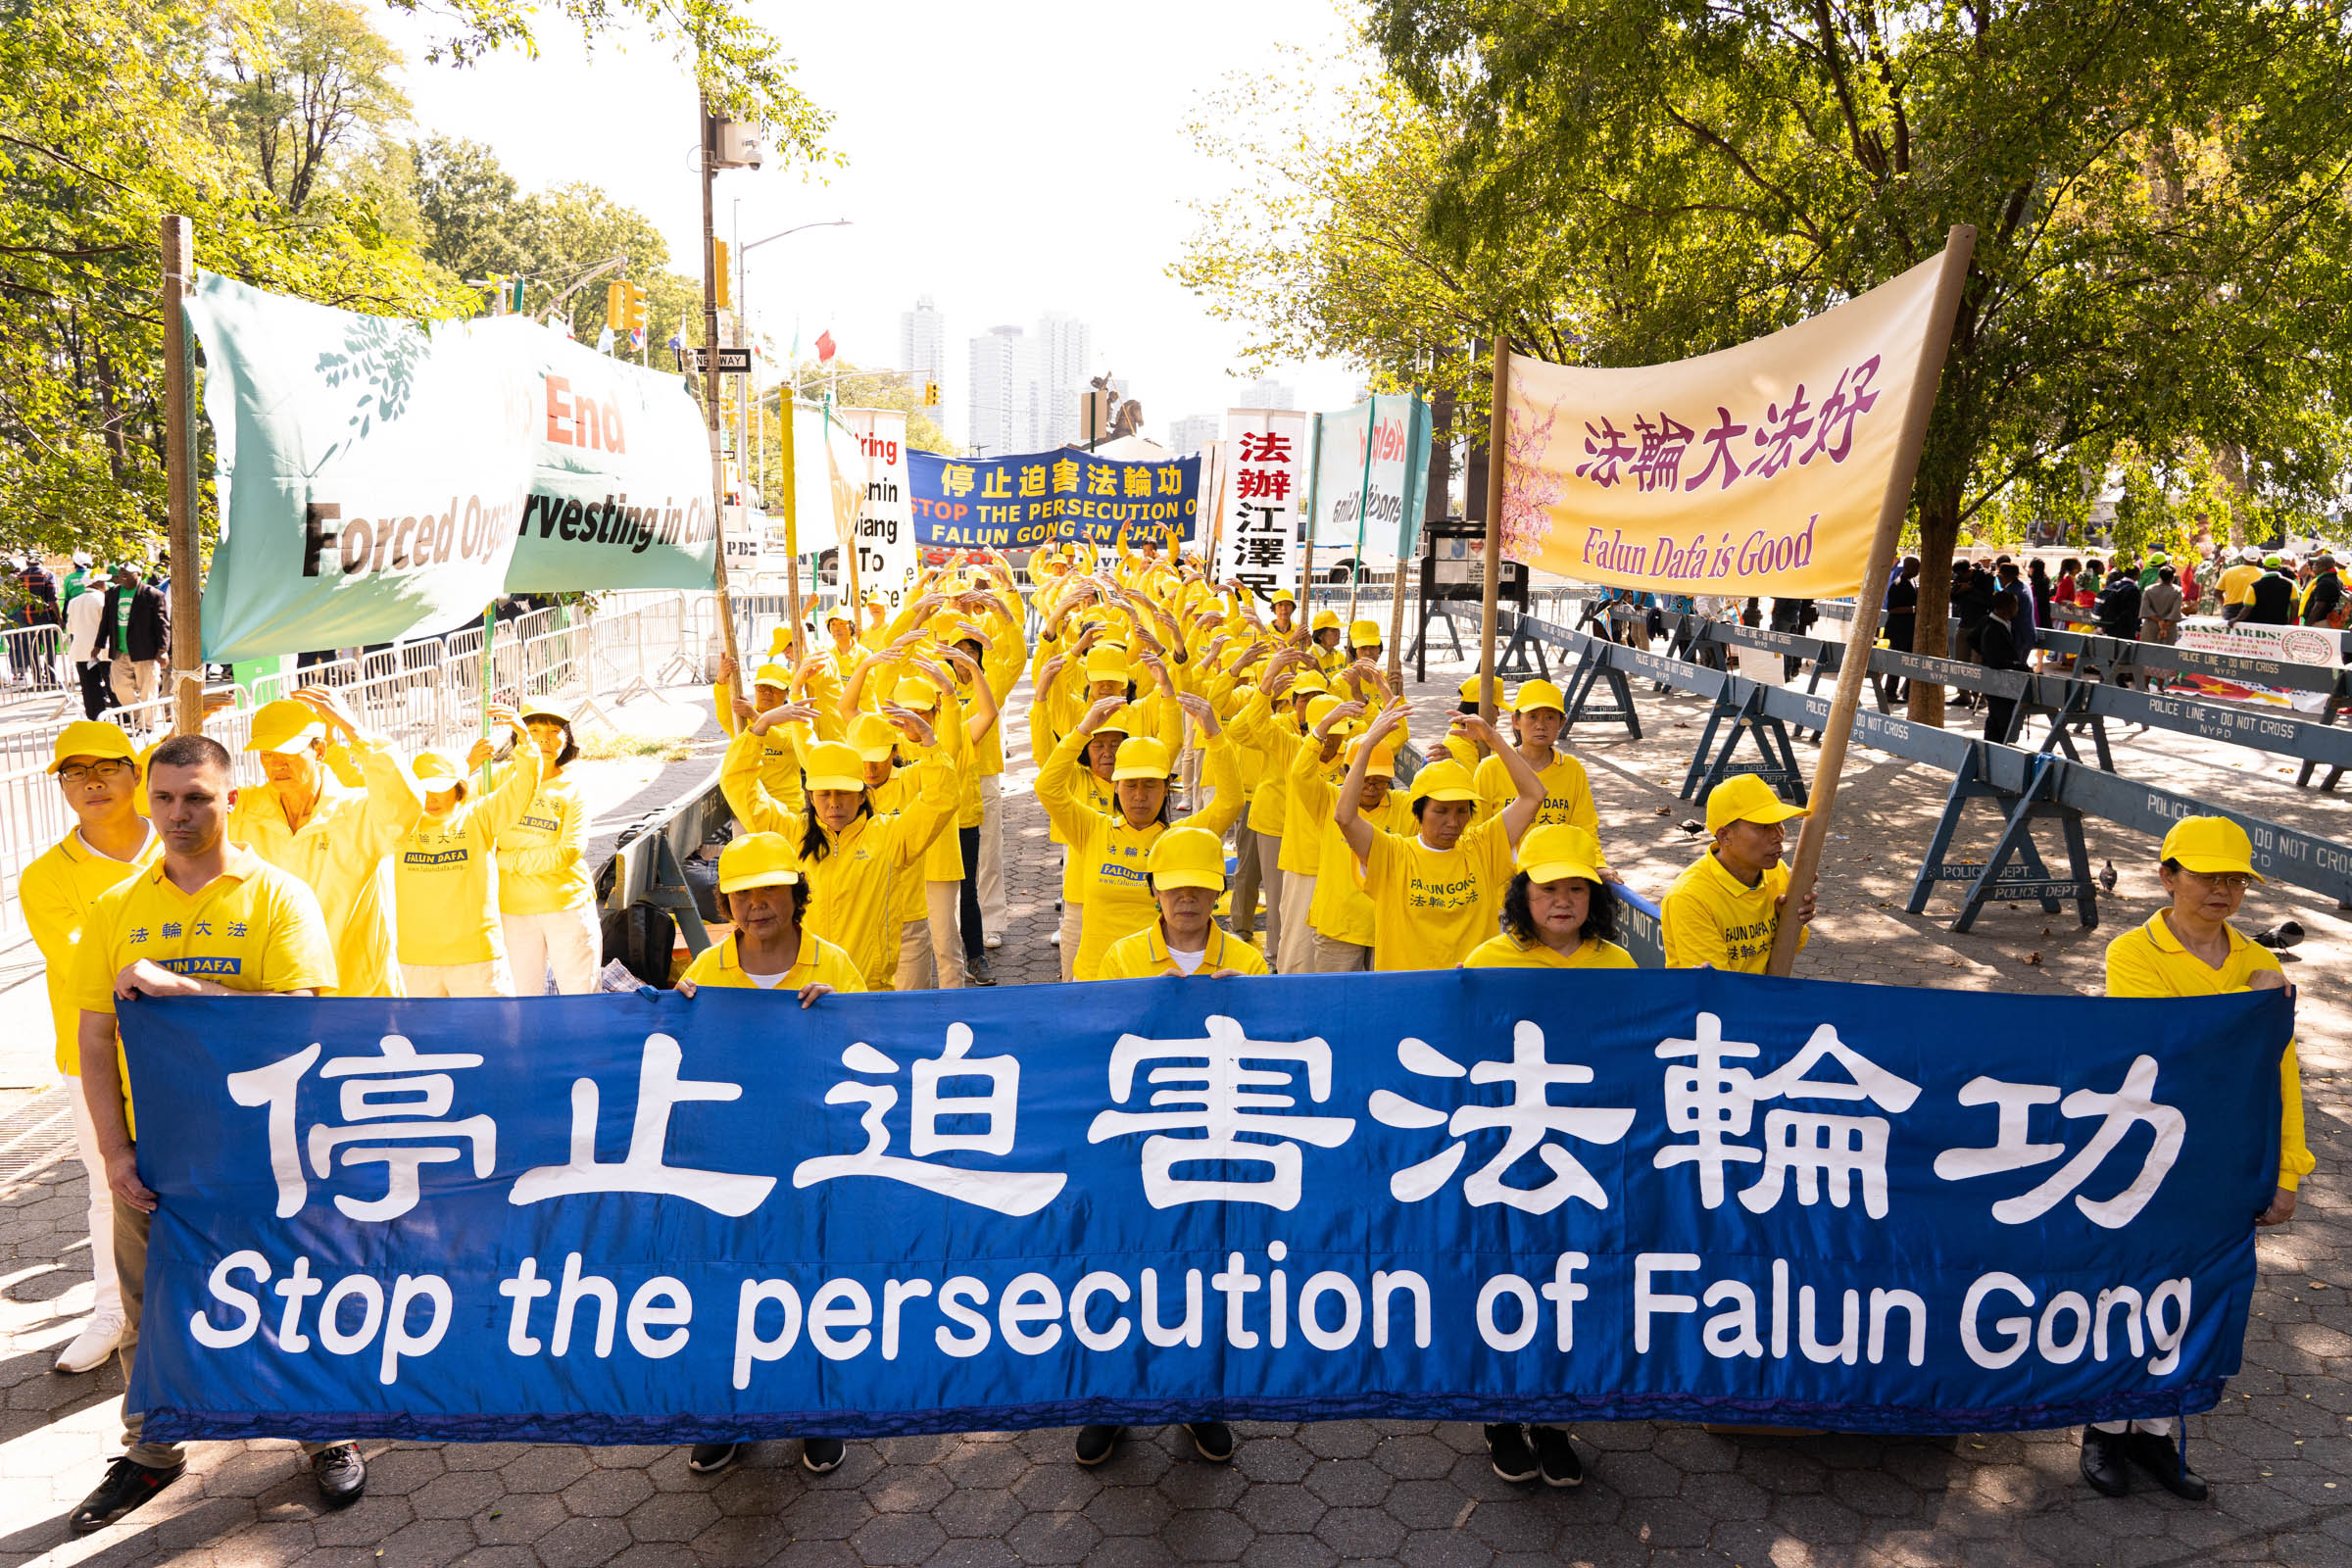 Image for article New York : Les pratiquants de Falun Gong appellent à la fin de la persécution en Chine pendant les sommets des Nations Unies